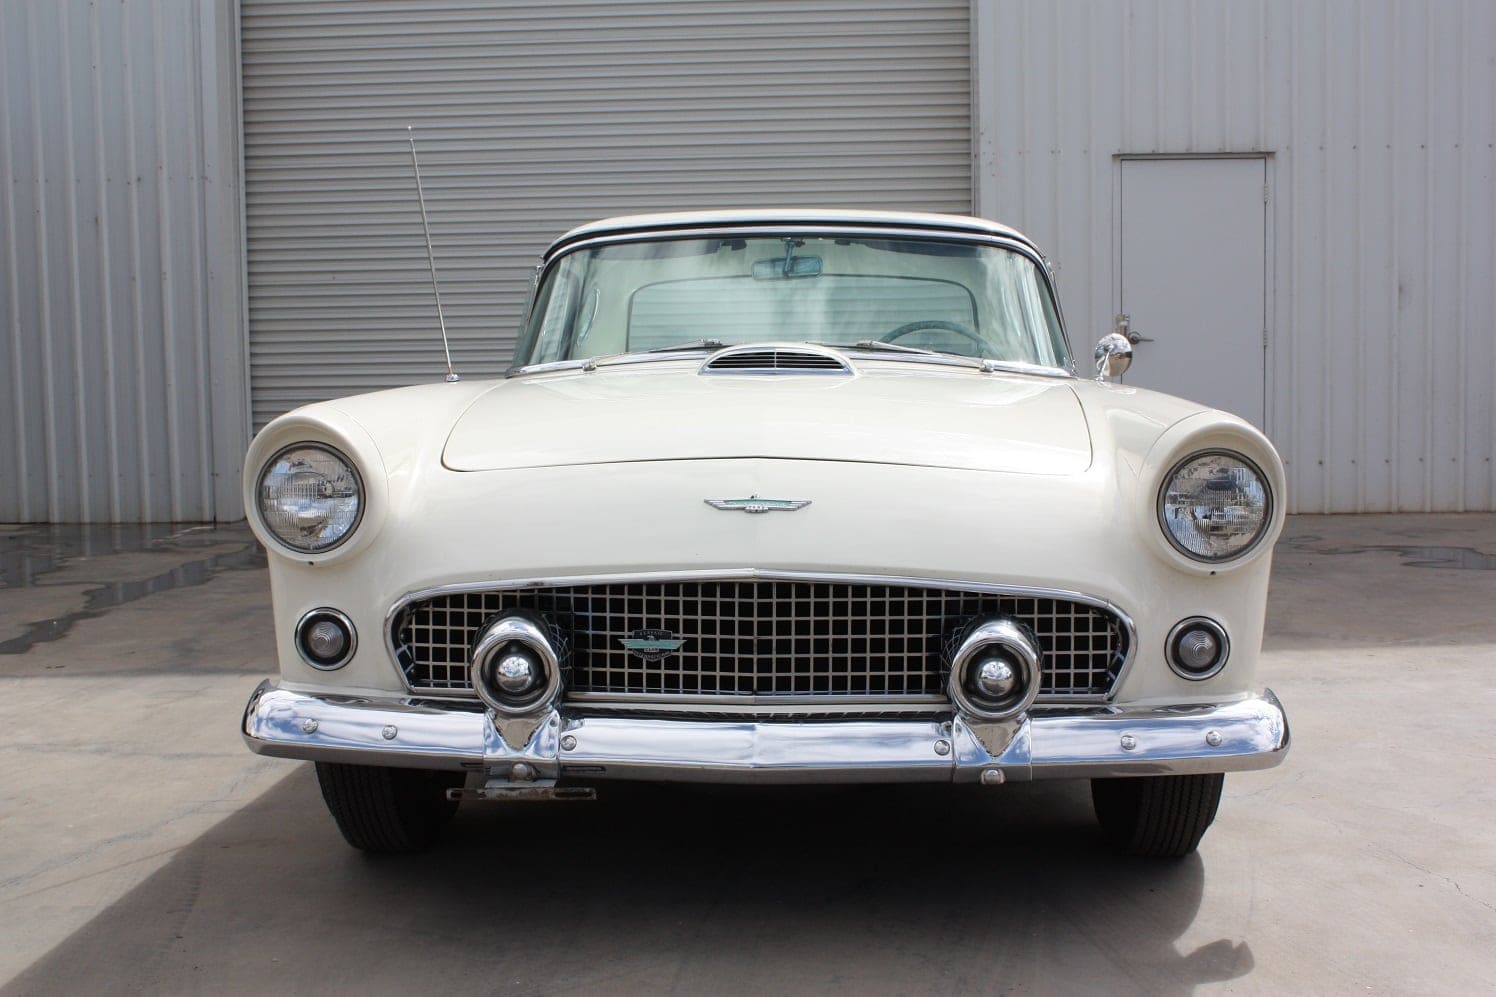 1956 Ford Thunderbird white